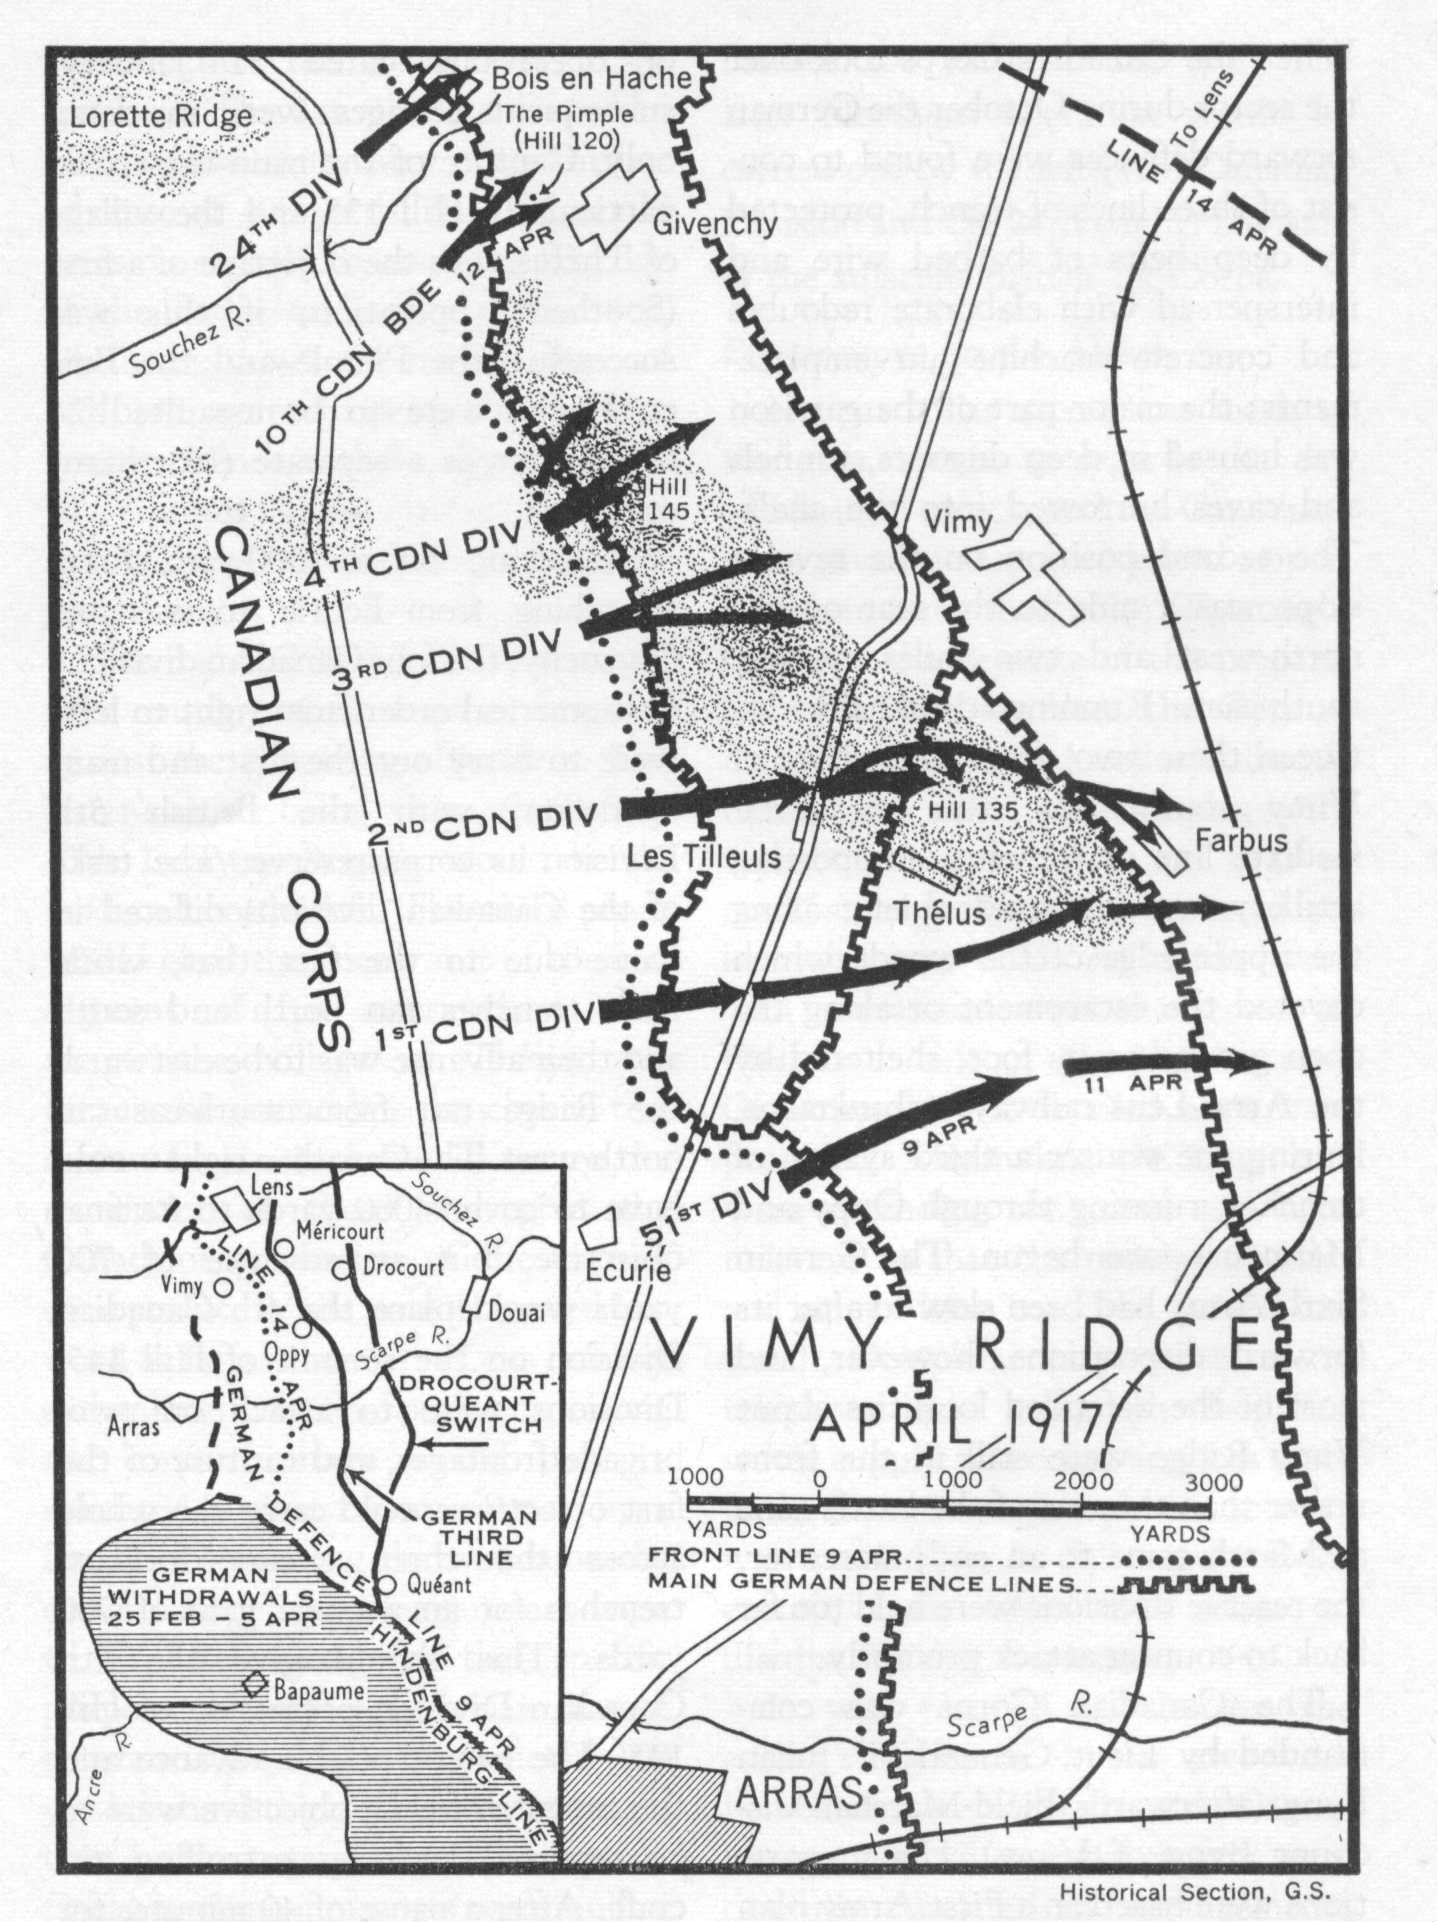 <p>Vimy Ridge April 1917 Battle Map